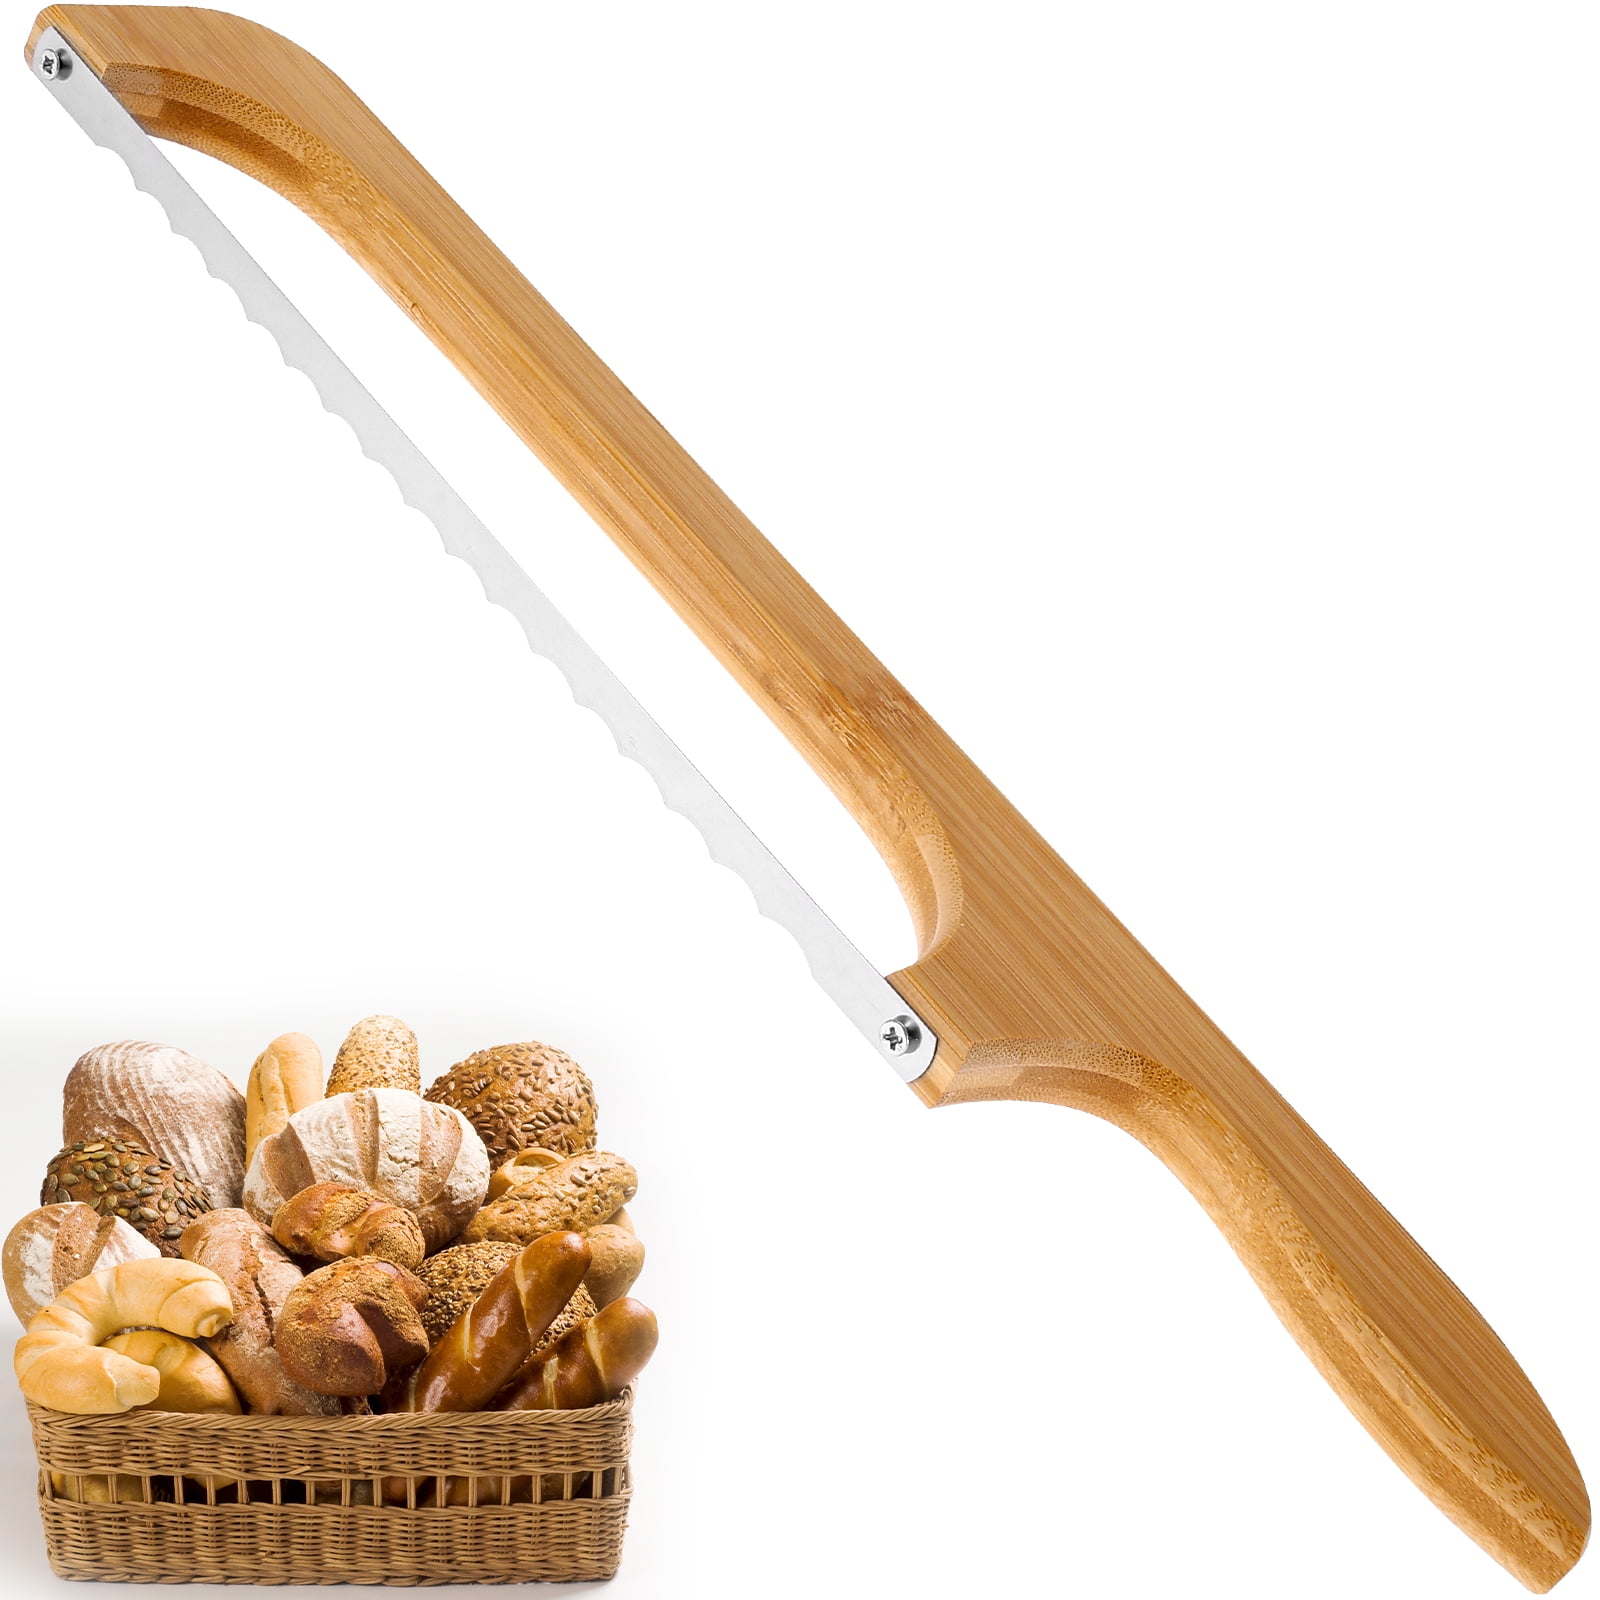 RIJIAKESEN Bread Knife,Bread Slicer, Sourdough Bread Slicer for Homemade  Bread, Natural Wooden Bow Design by Baker and Stainless Steel for Easy